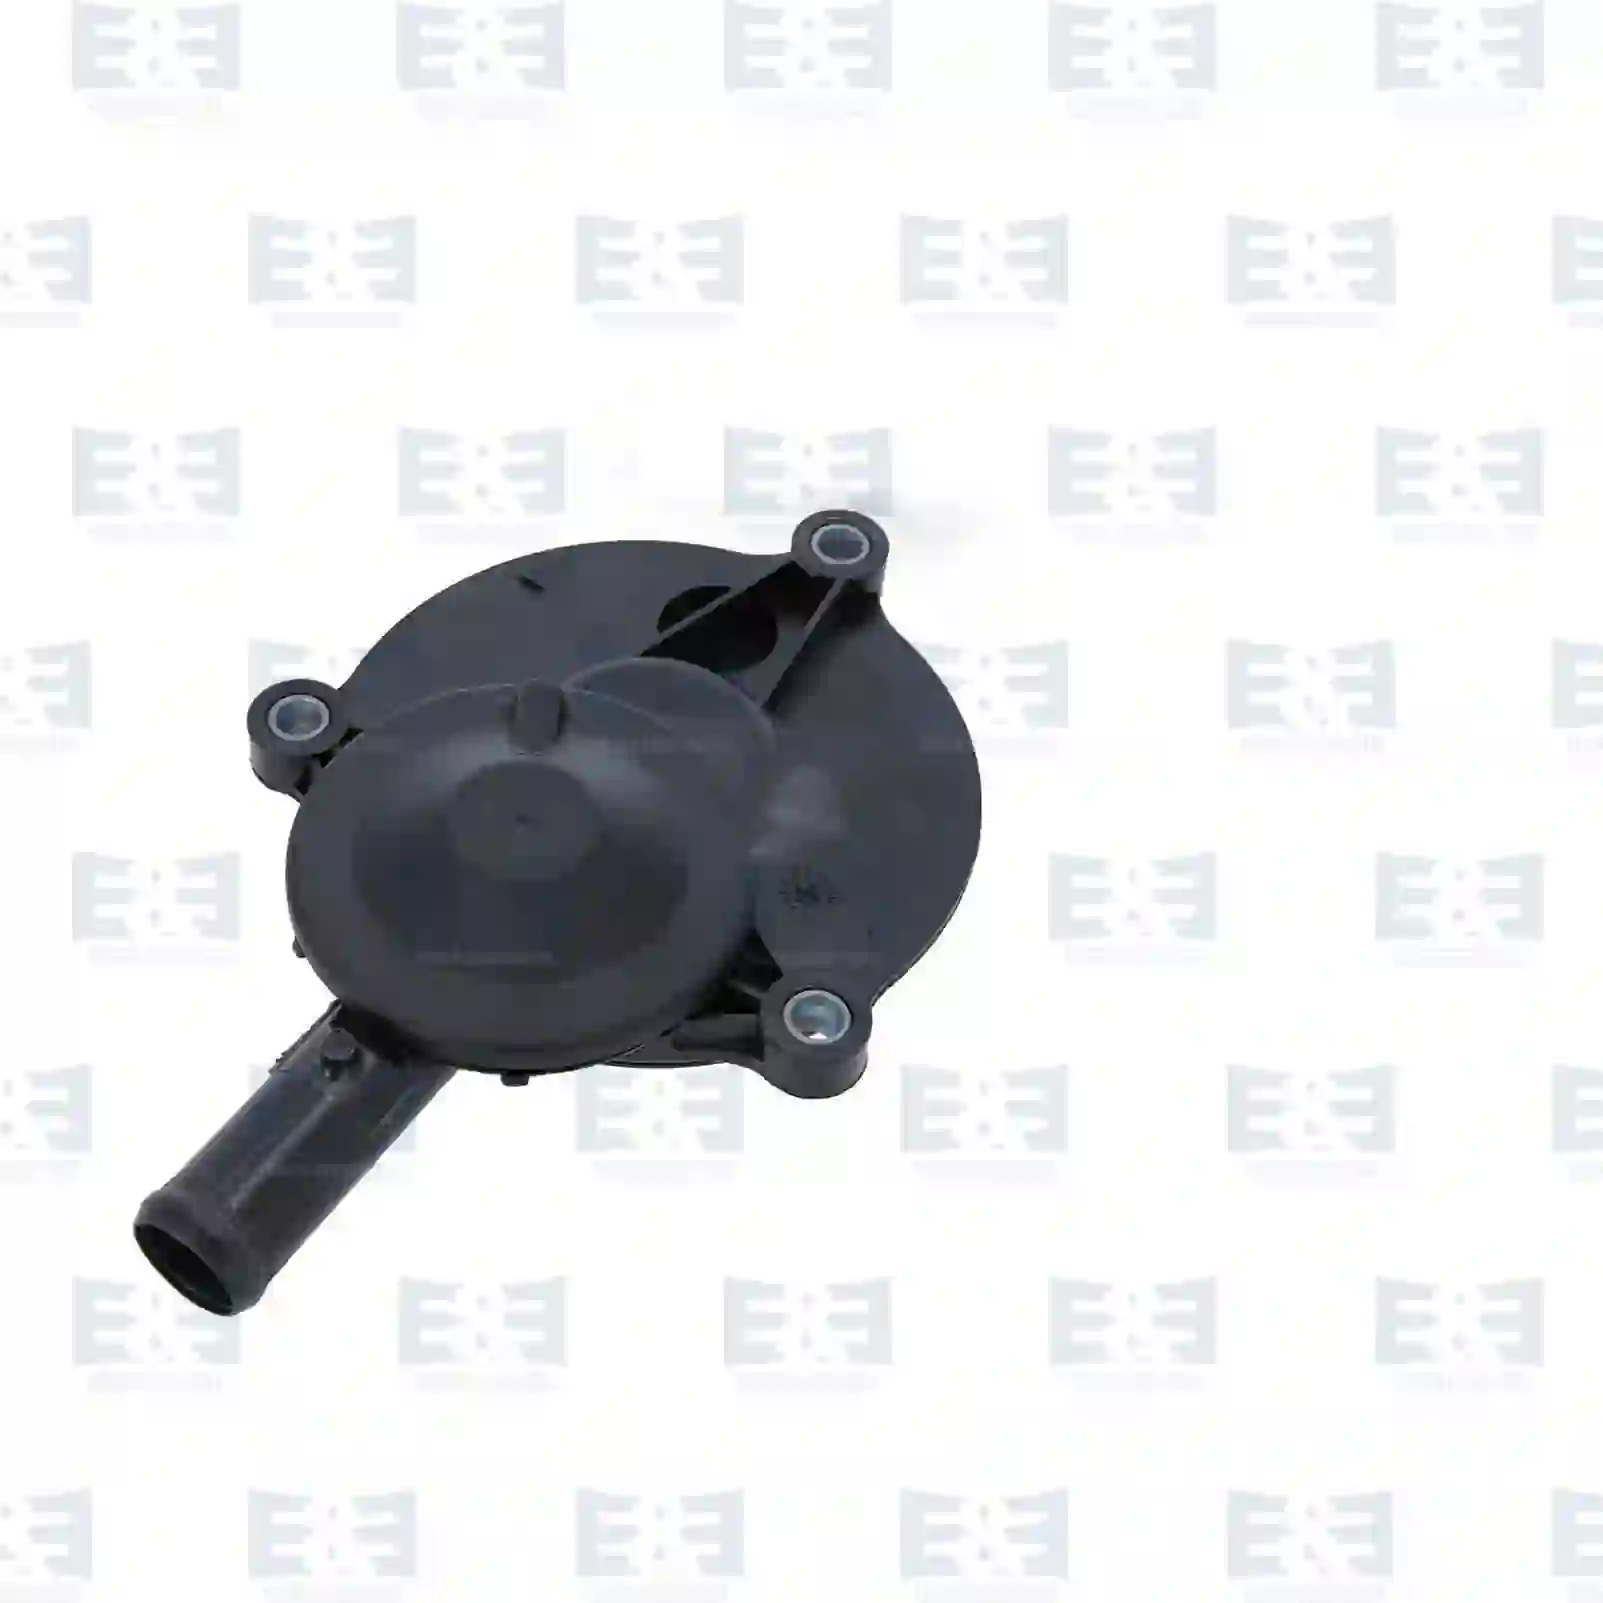  Pressure control valve || E&E Truck Spare Parts | Truck Spare Parts, Auotomotive Spare Parts